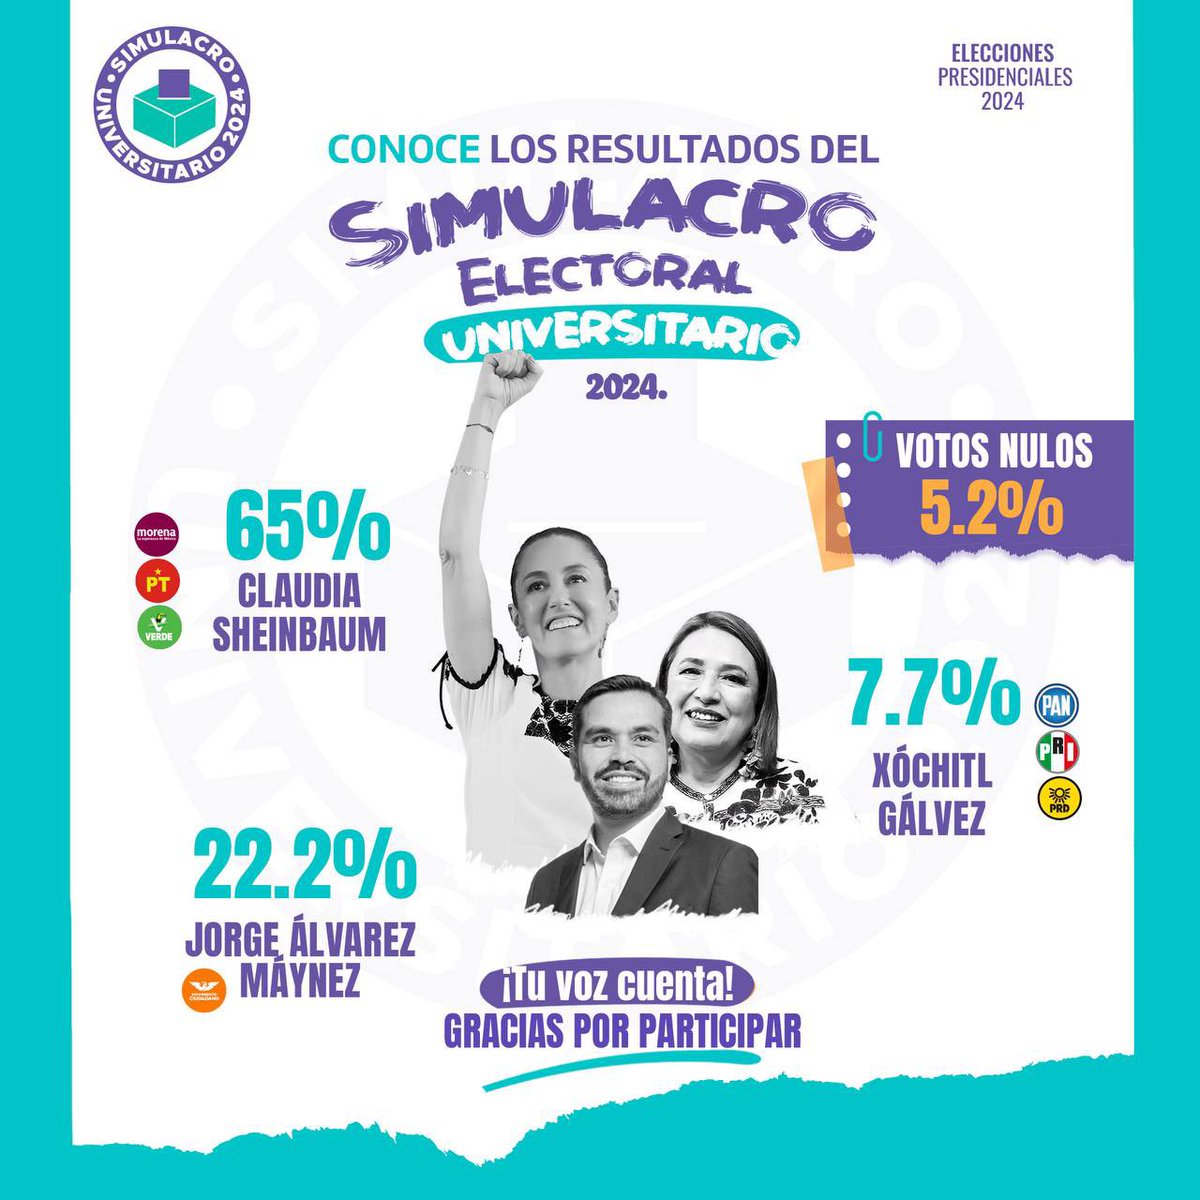 Cae @XochitlGalvez al tercer lugar con 7.7% en el “simulacro electoral universitario” de más de cien universidades y arrasa @Claudiashein con 65%, mientras que @AlvarezMaynez obtiene el segundo lugar con 22%: sinembargo.mx/07-05-2024/449…